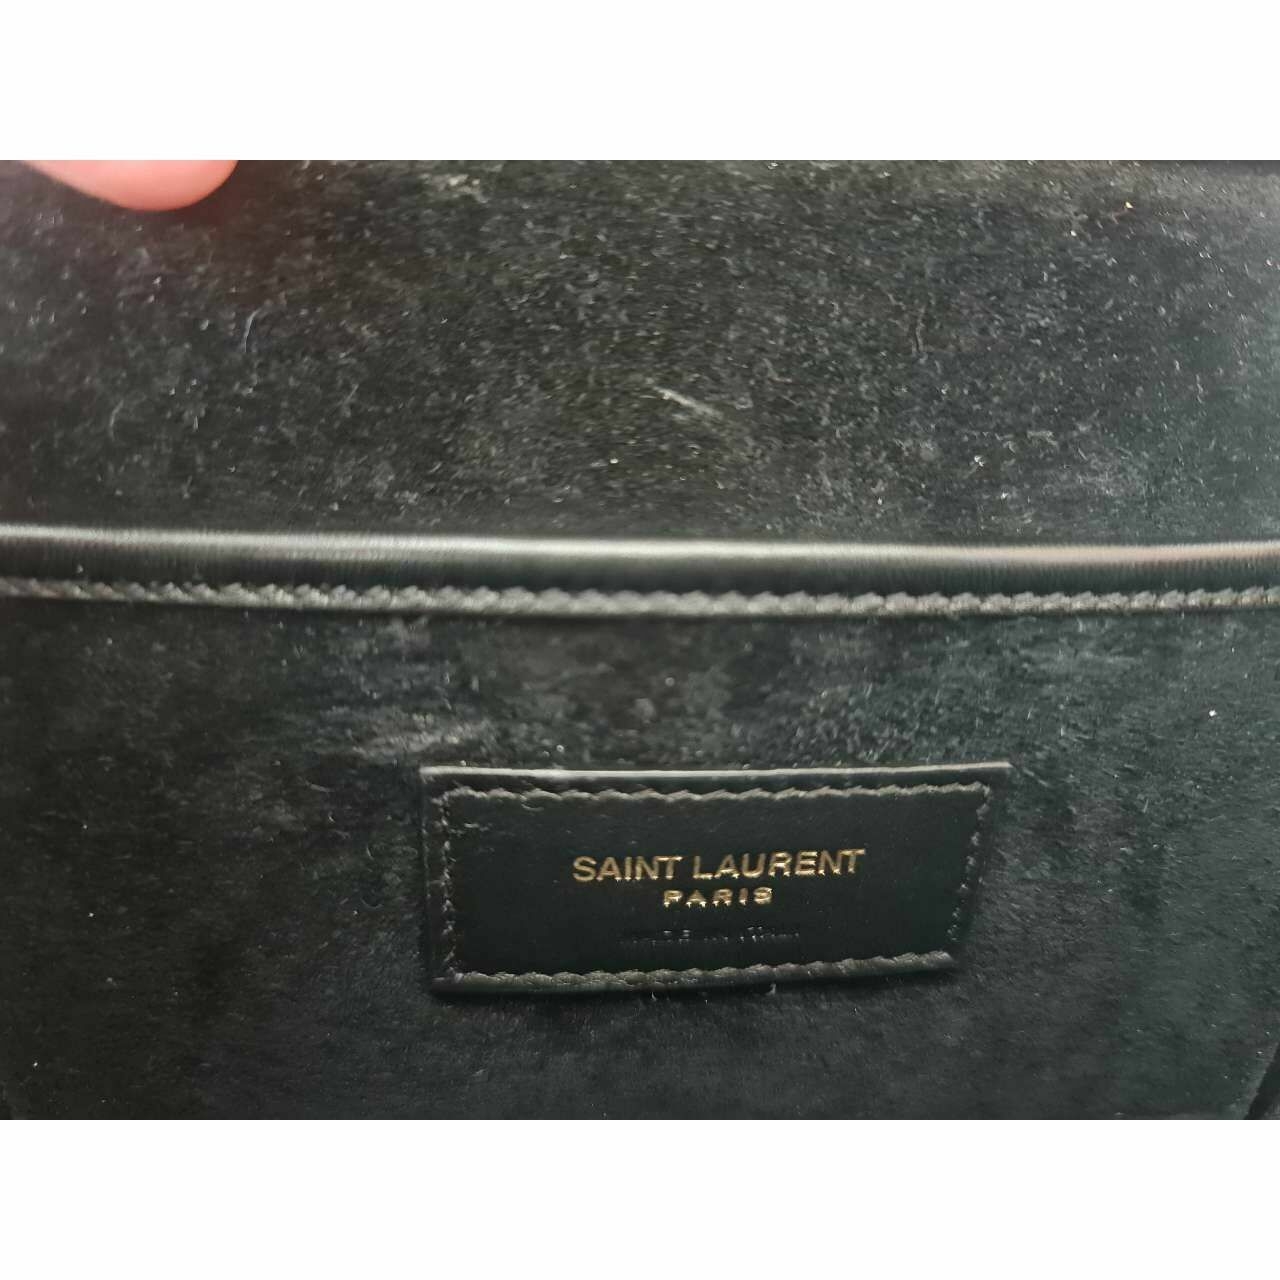 Saint Laurent Black Charlie Medium Shoulder Bag